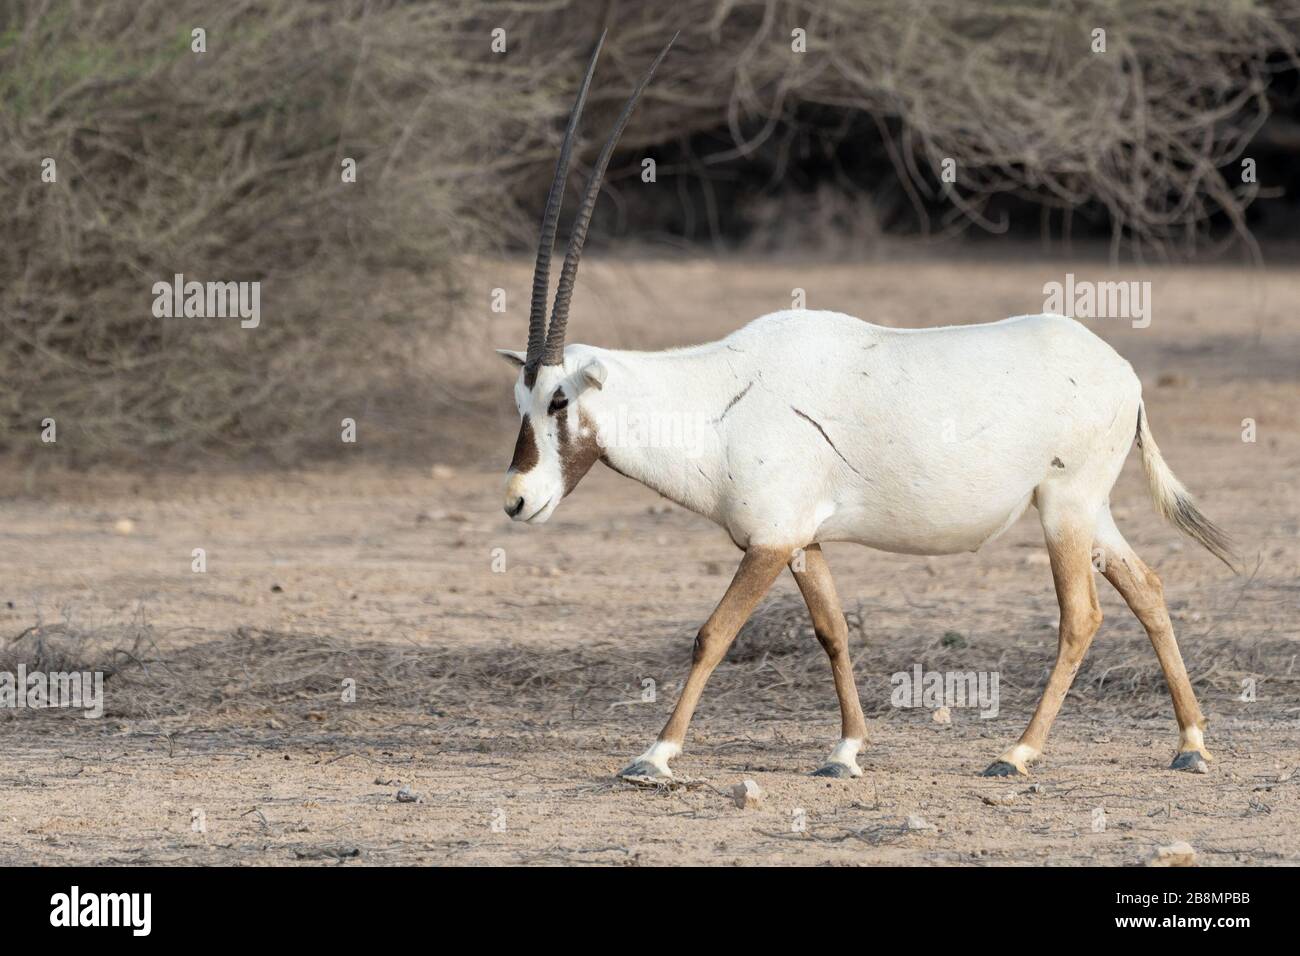 L'Oryx arabe d'Al Reem nature reseve au Qatar Banque D'Images